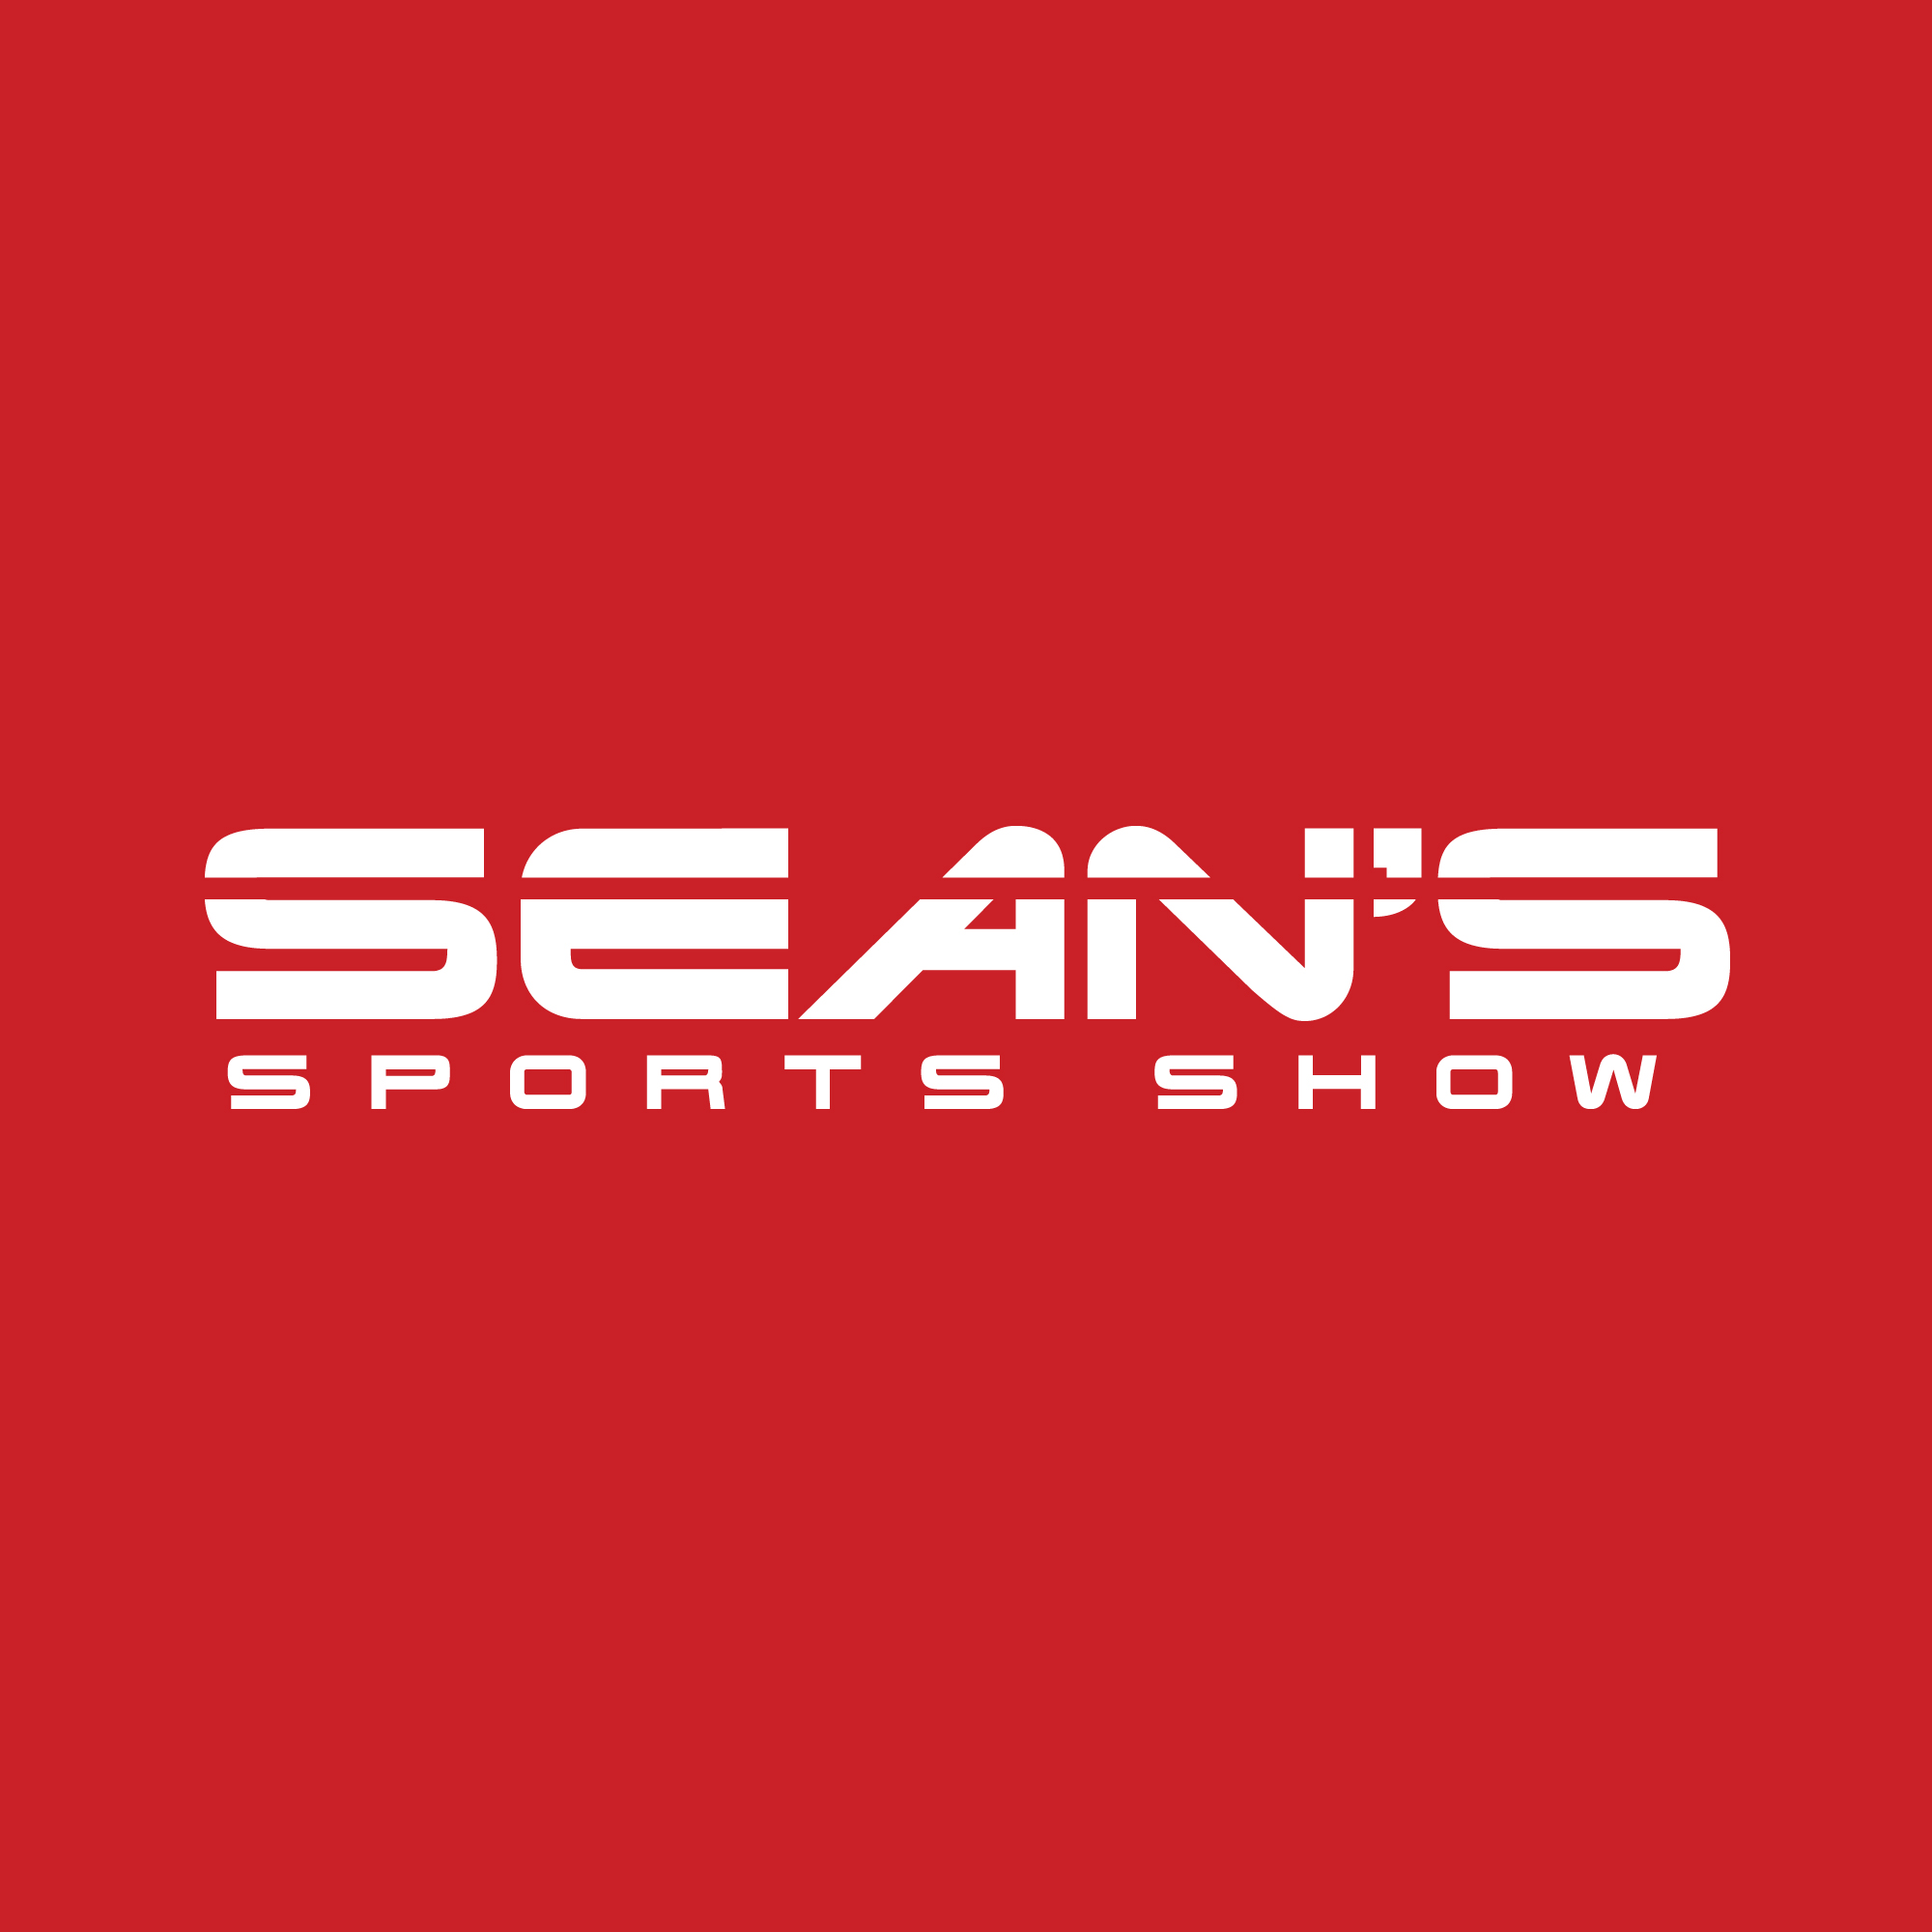 Sean's Sports Show